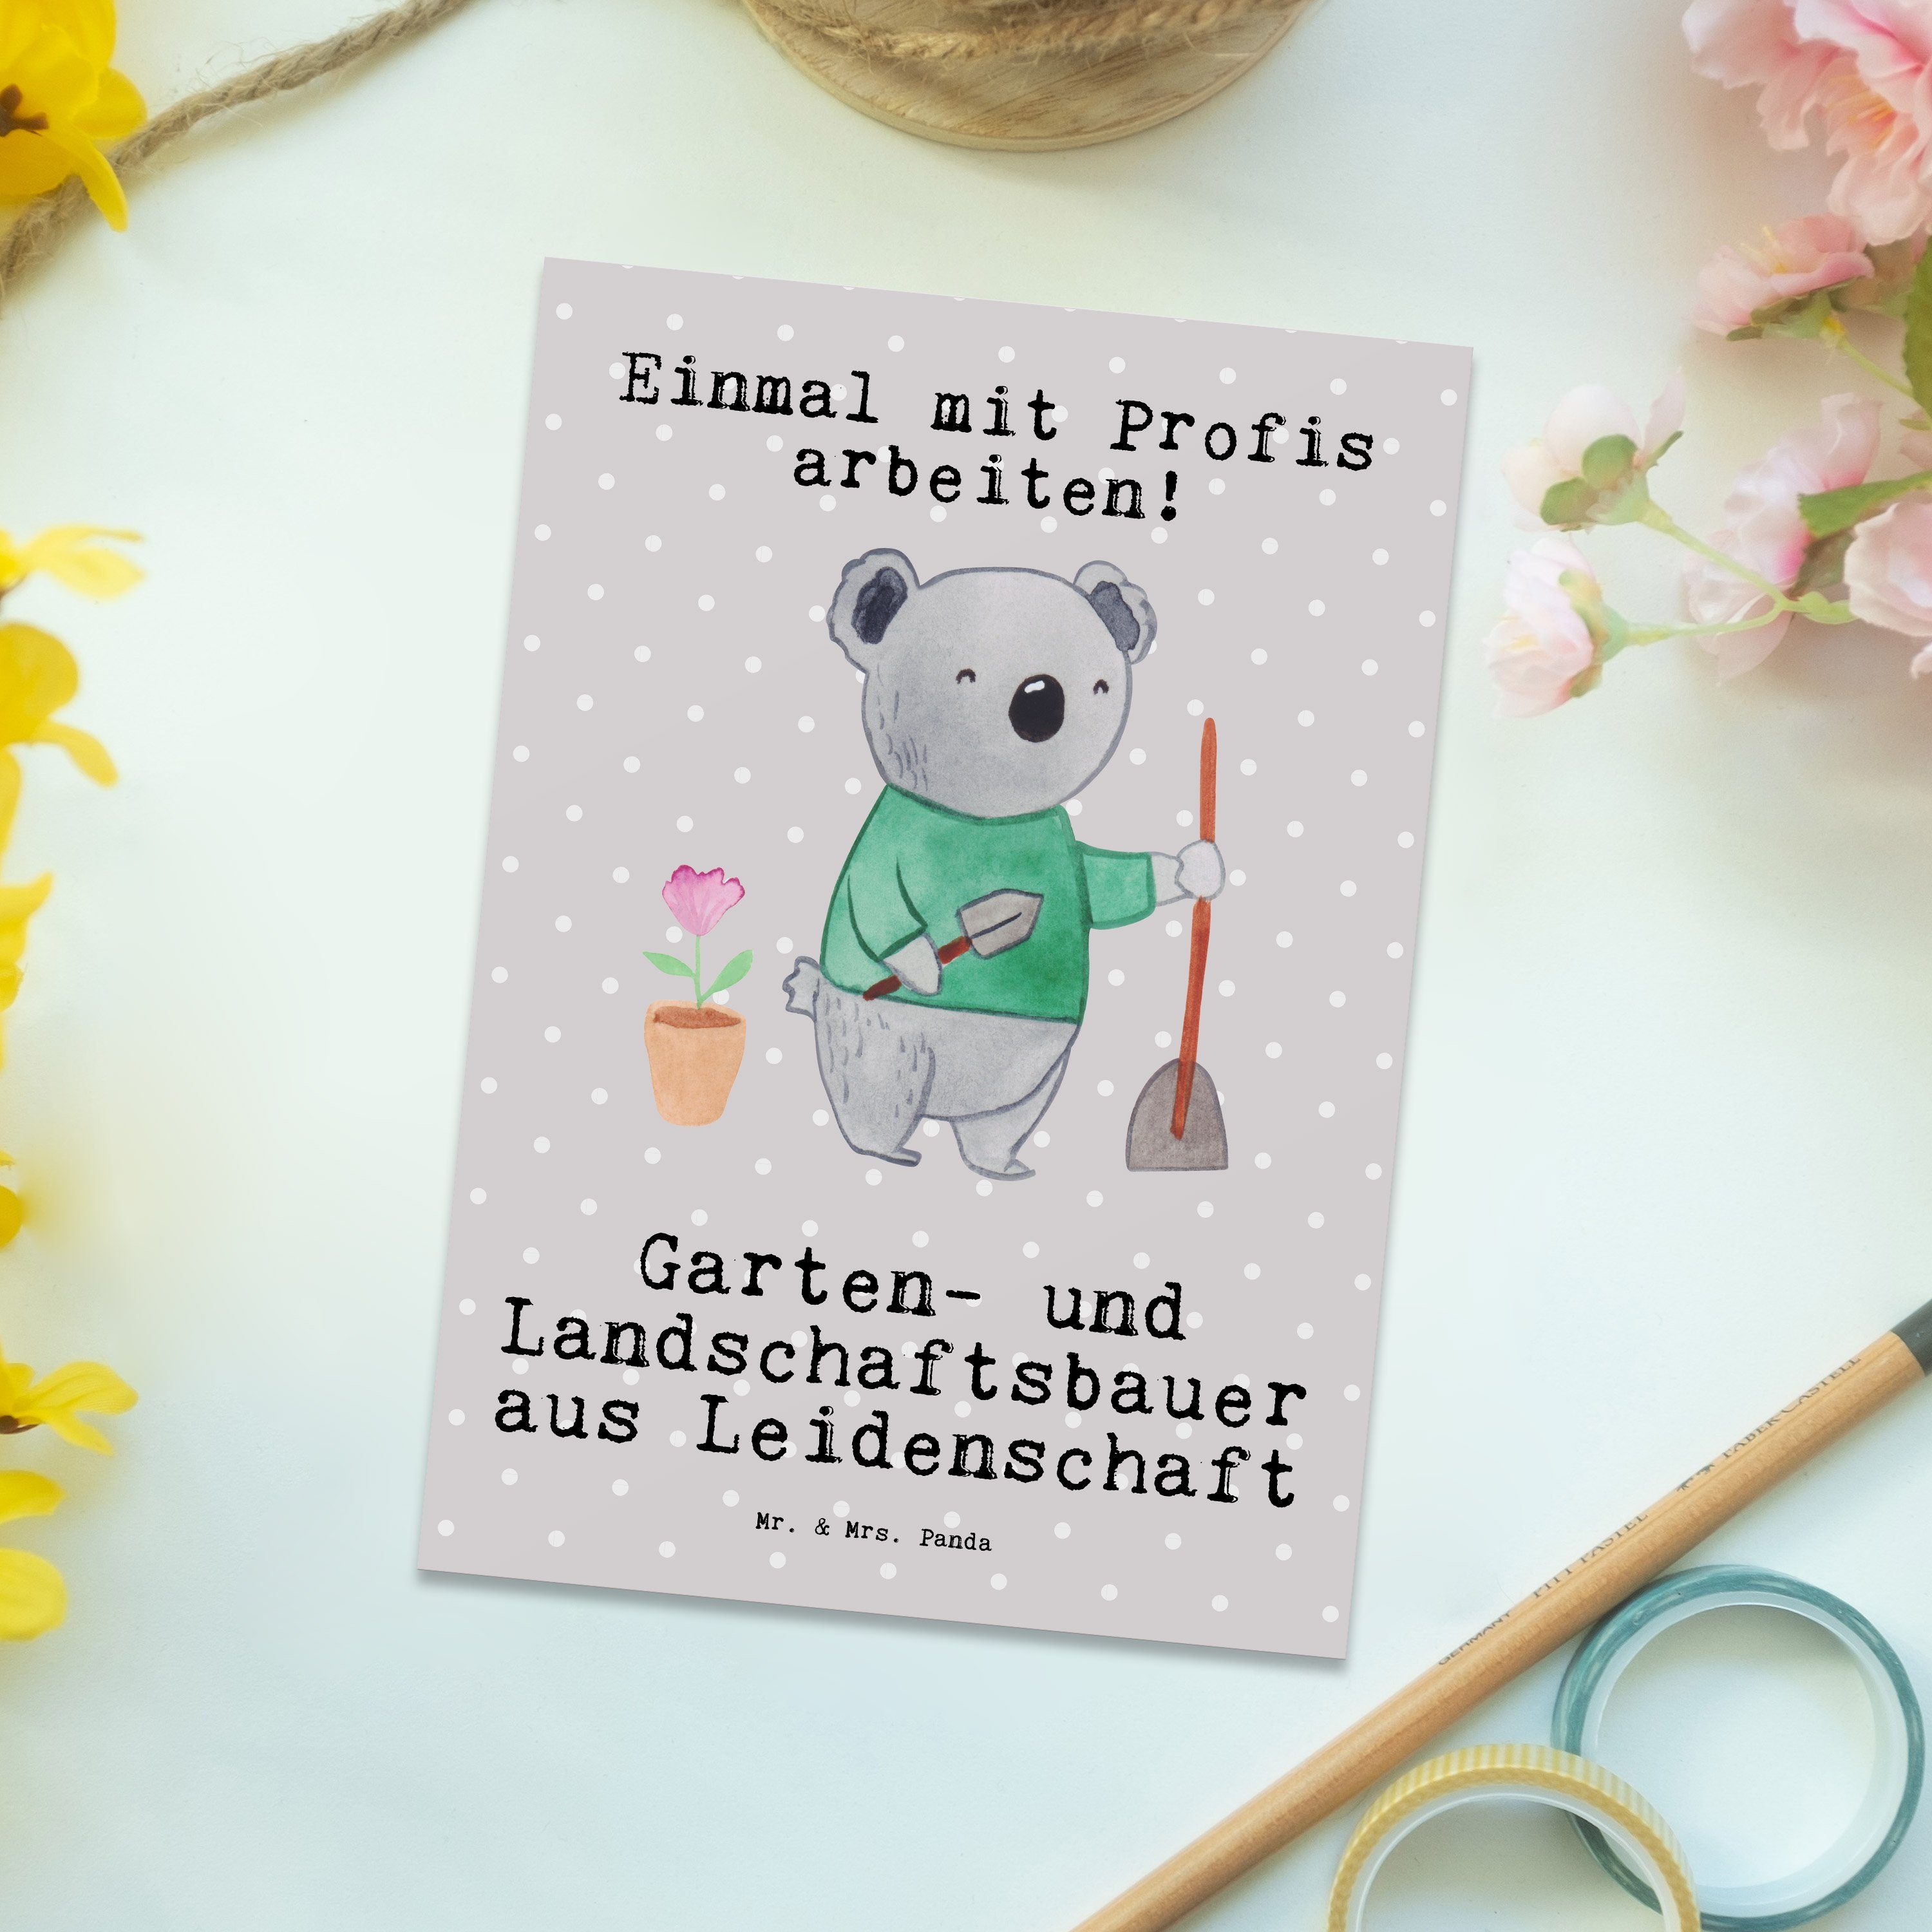 Gesche Pastell Landschaftsbauer Panda aus Mrs. Grau - & Garten- Leidenschaft Postkarte Mr. und -